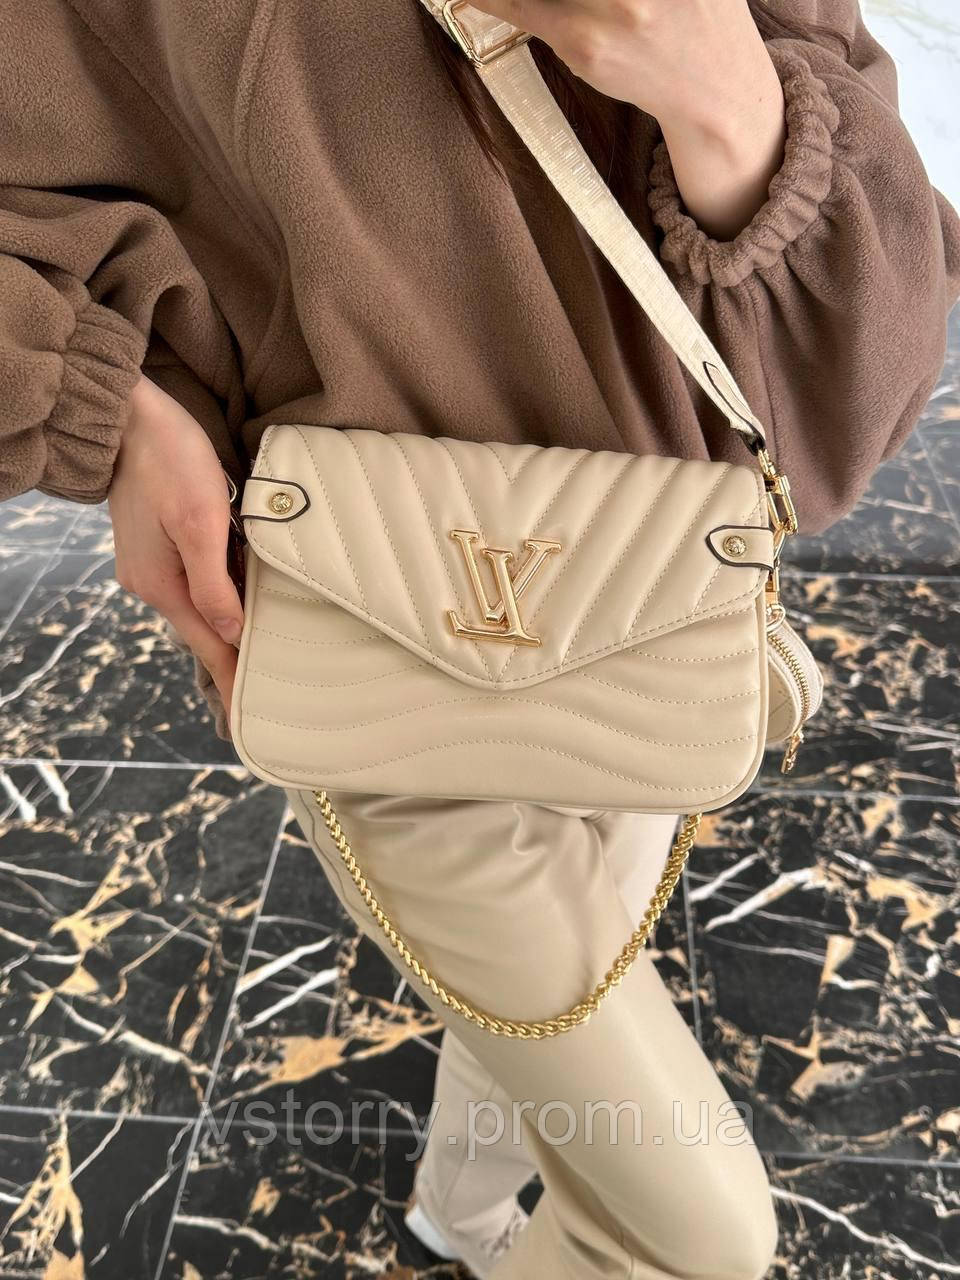 Купить Vuitton New Wave Multi Pochette Beige Сумка женская LV Луи